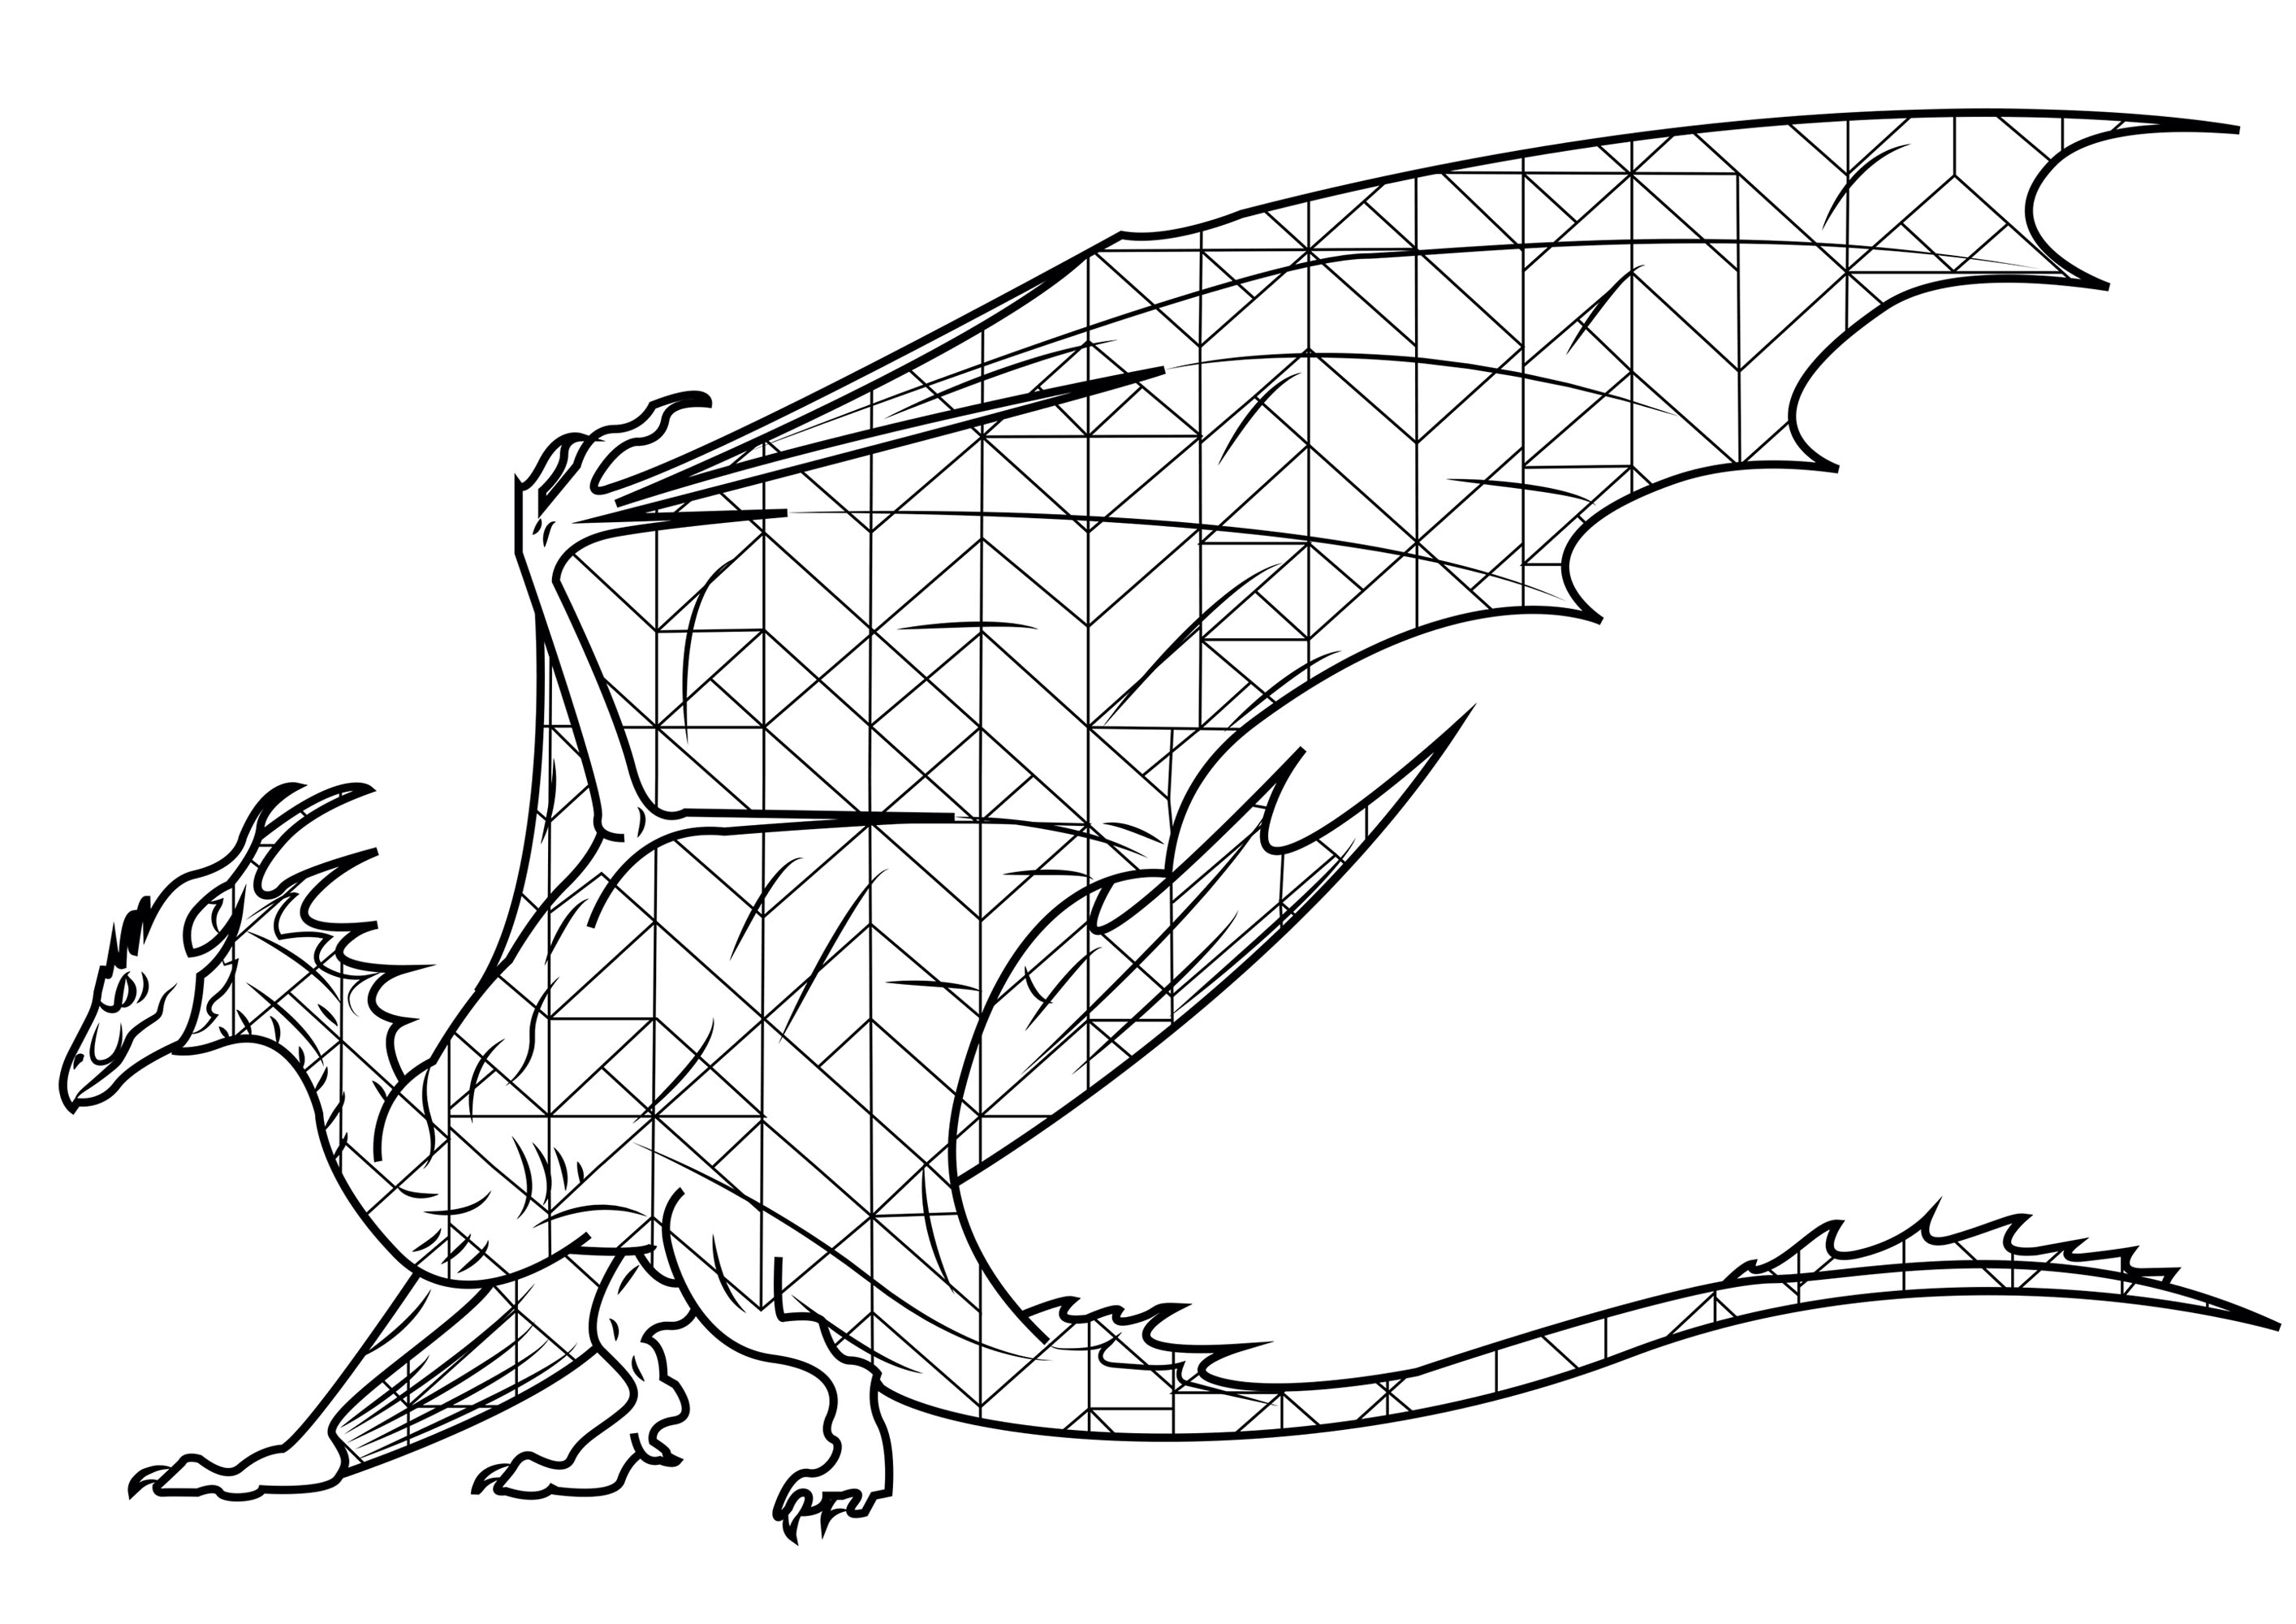 Wyvern: criatura legendaria con cabeza y alas de dragón. Dessin original sur Arte desviado par sugarpoultry.